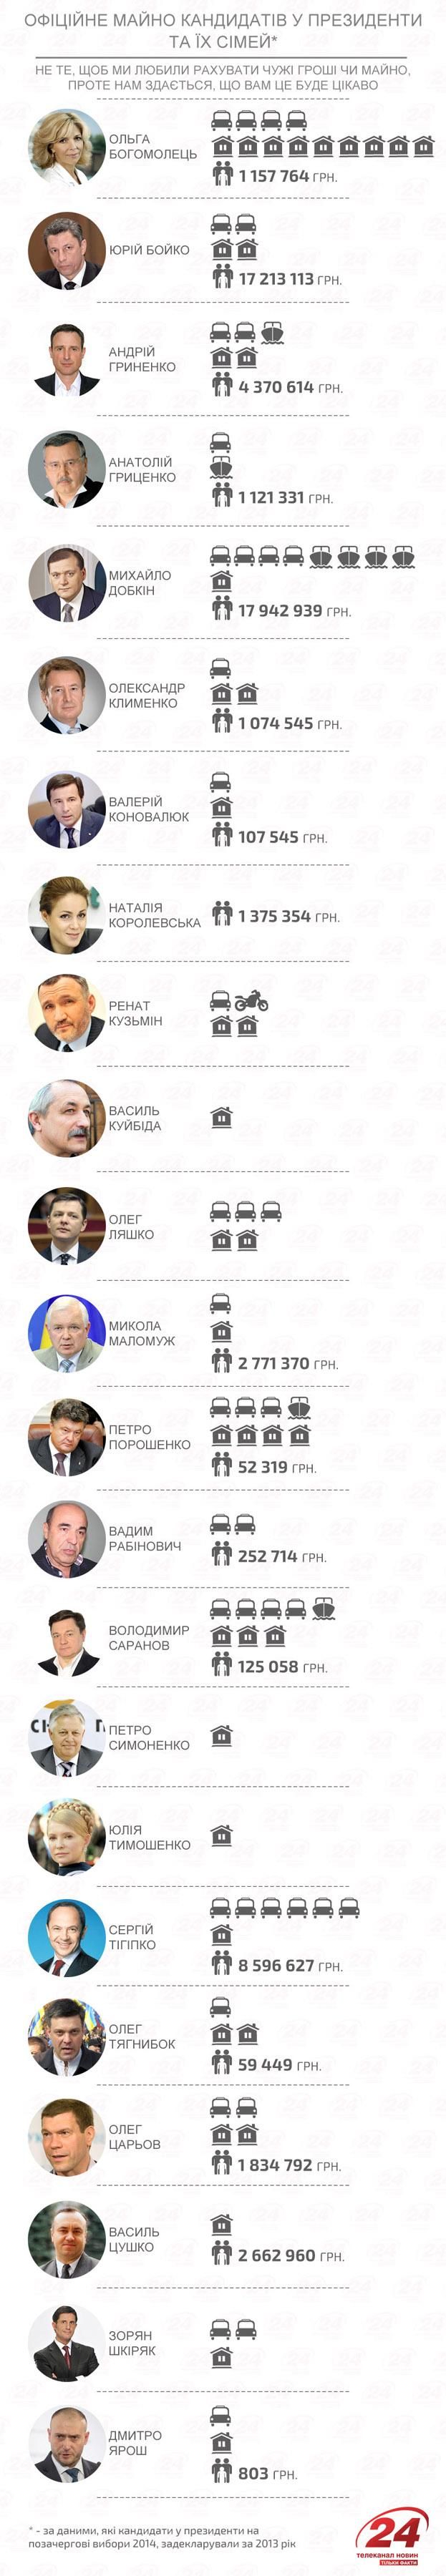 Имущество кандидатов в президенты: кто чем богат [Инфографика]